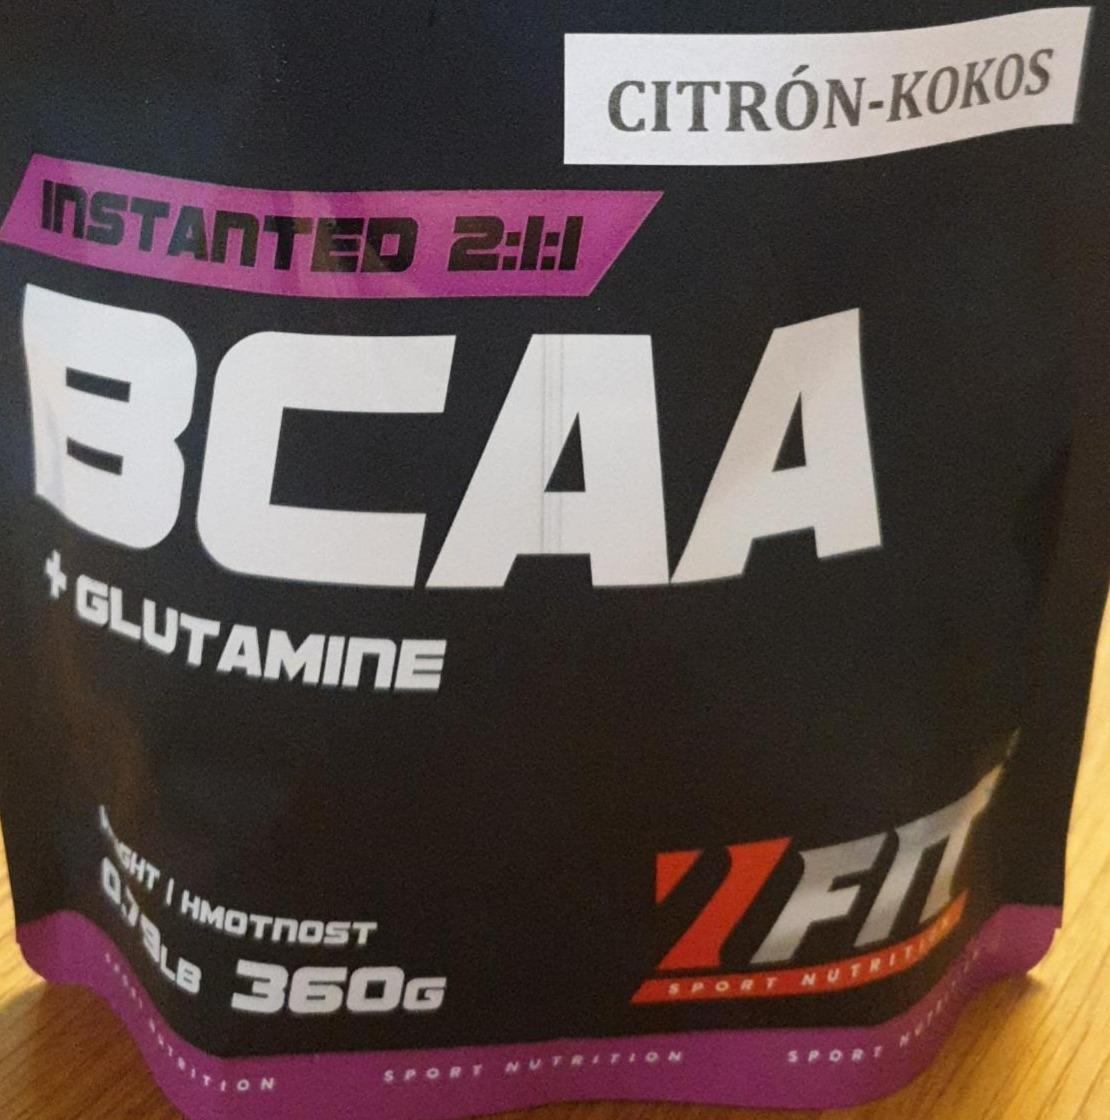 Fotografie - BCAA + glutamine citrón kokos 7Fit sport nutrition